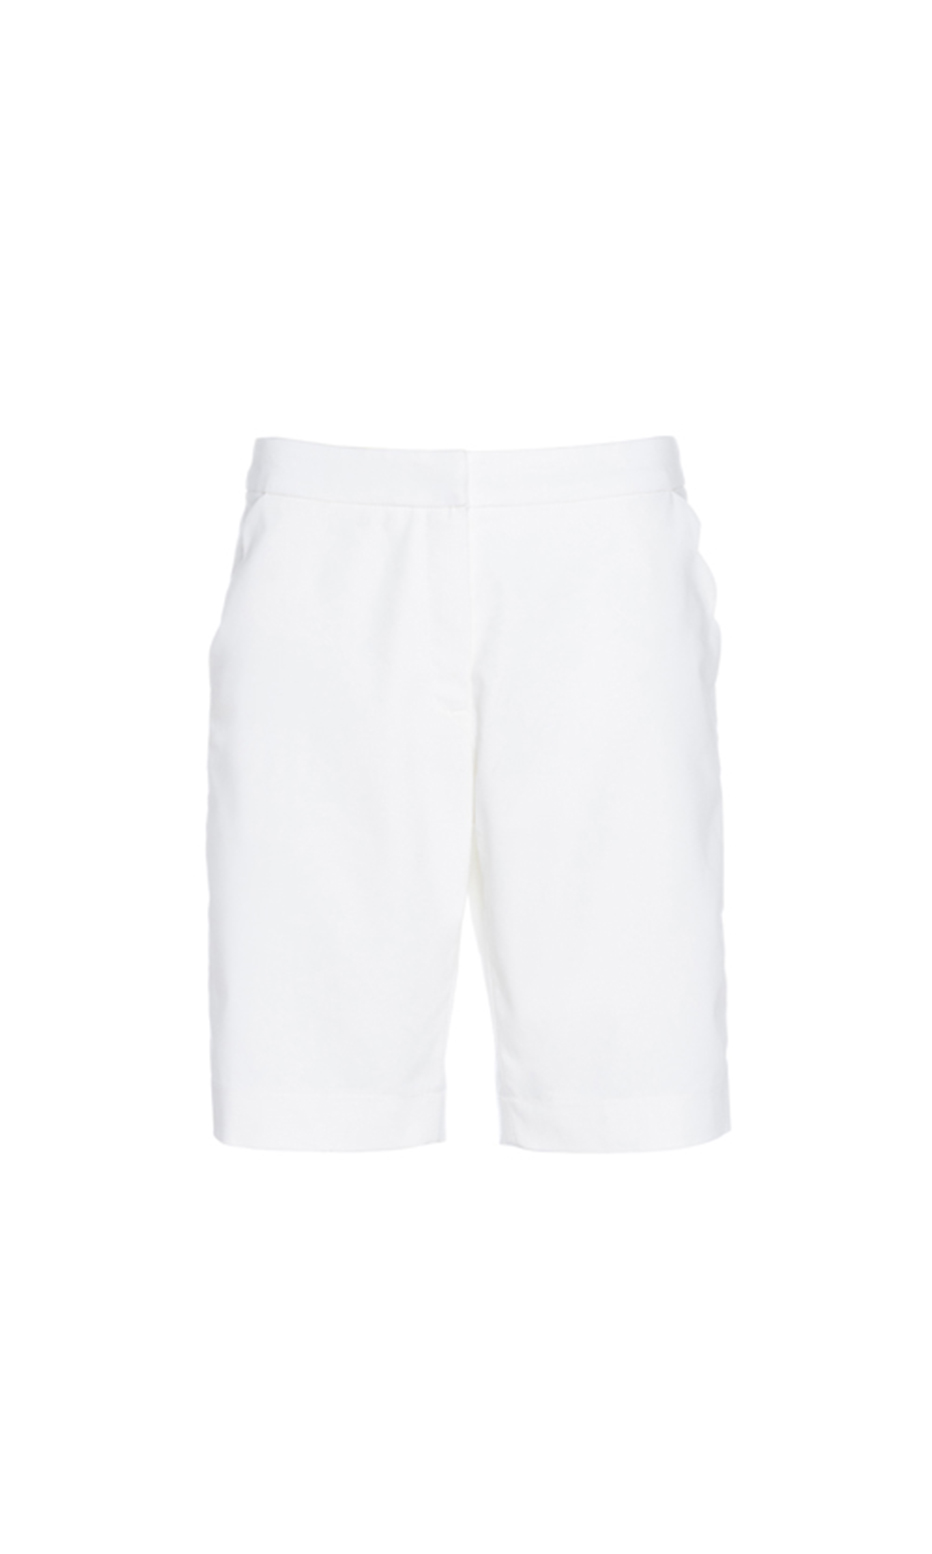 white bermuda shorts urbanoid